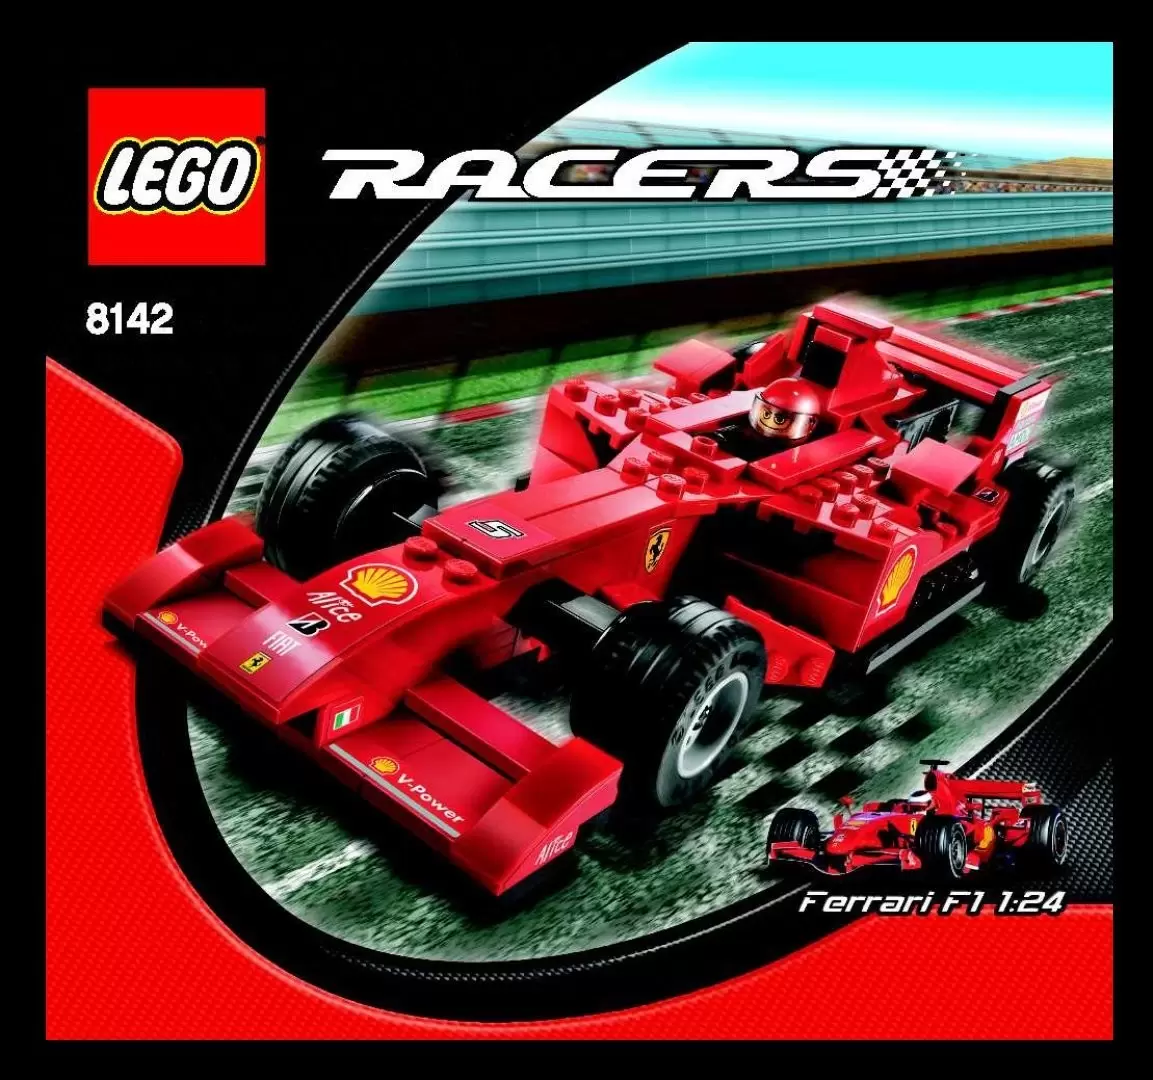 Ferrari 248 F1 1:24 - LEGO Racers set 8142